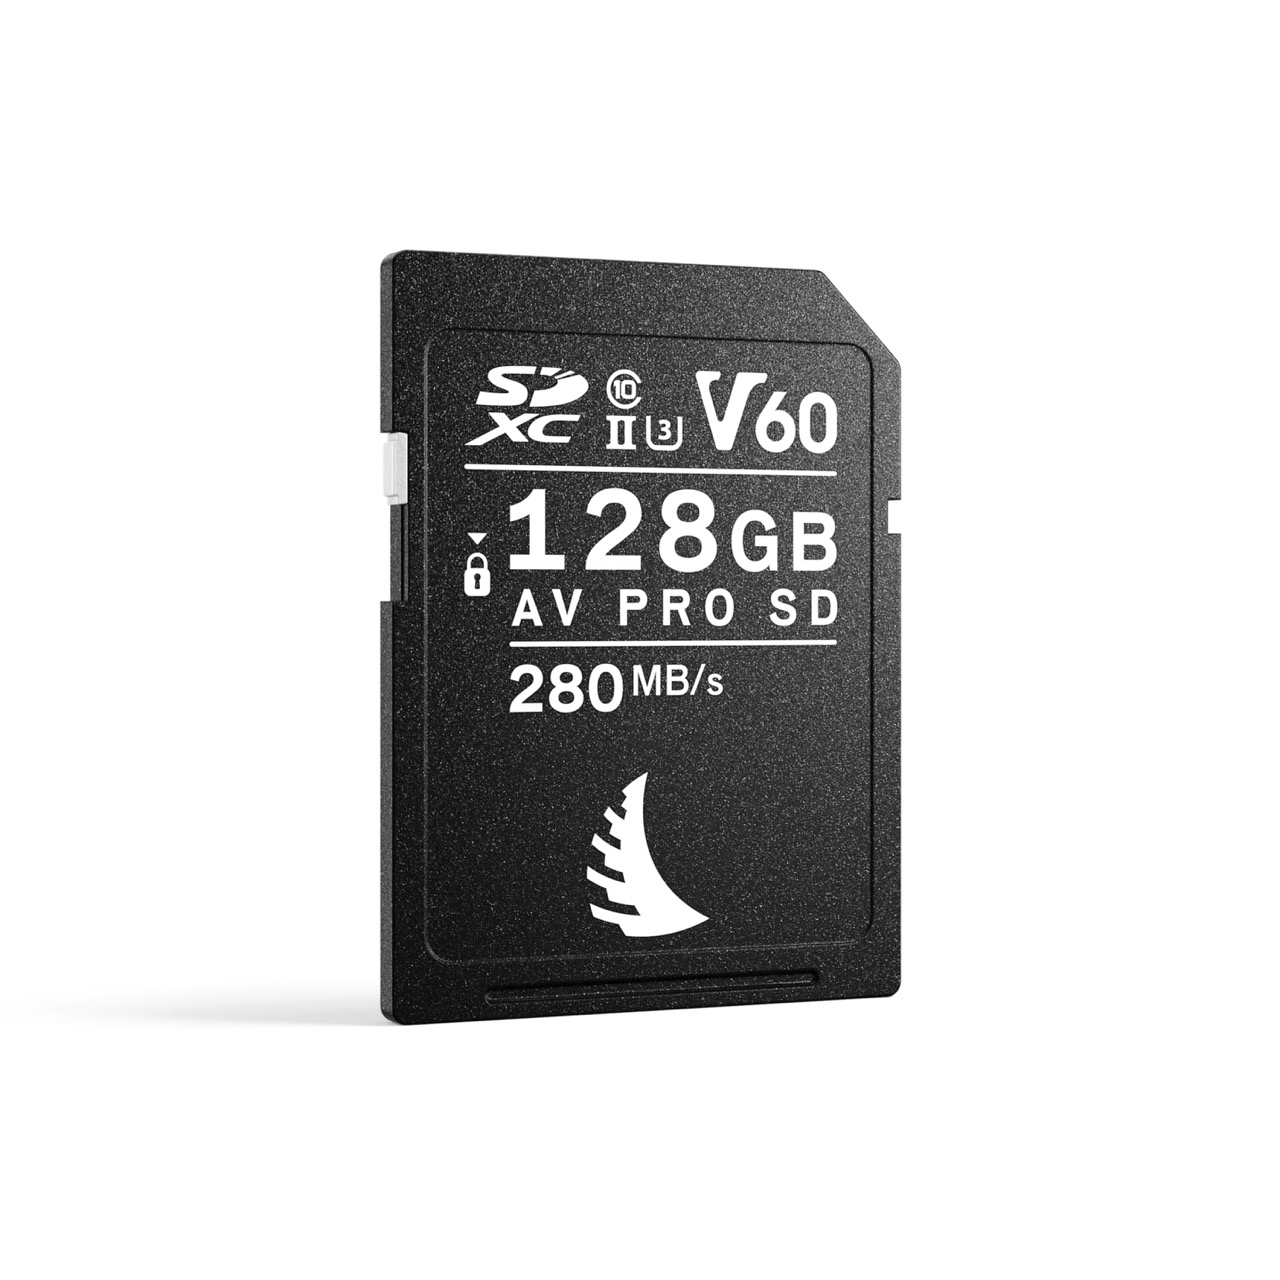 Angelbird AV PRO SD V60 MK2 128GB Speicherkarte, Frontal schräg